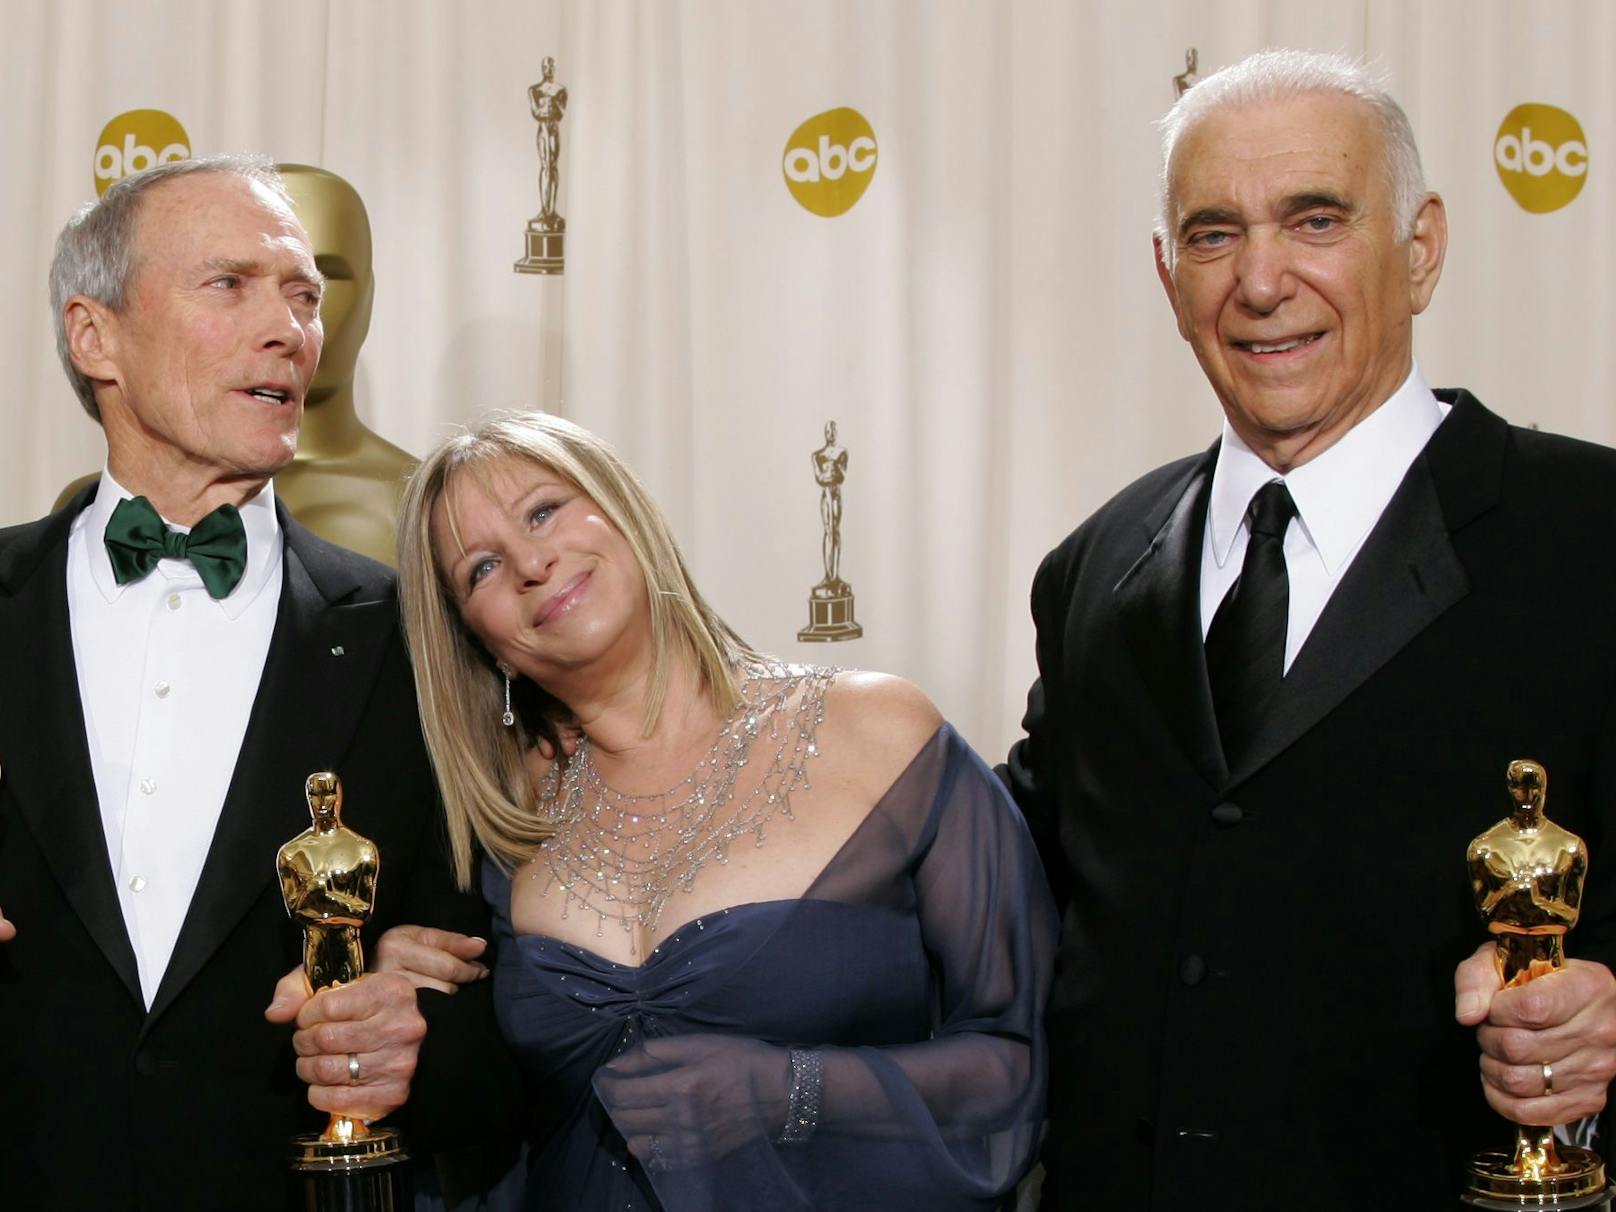 Clint (ganz links) wird von Barbra Streisand umarmt, nachdem er mit Produzenten Al (ganz rechts) einen Oscar für "Million Dollar Baby" gewonnen hat.